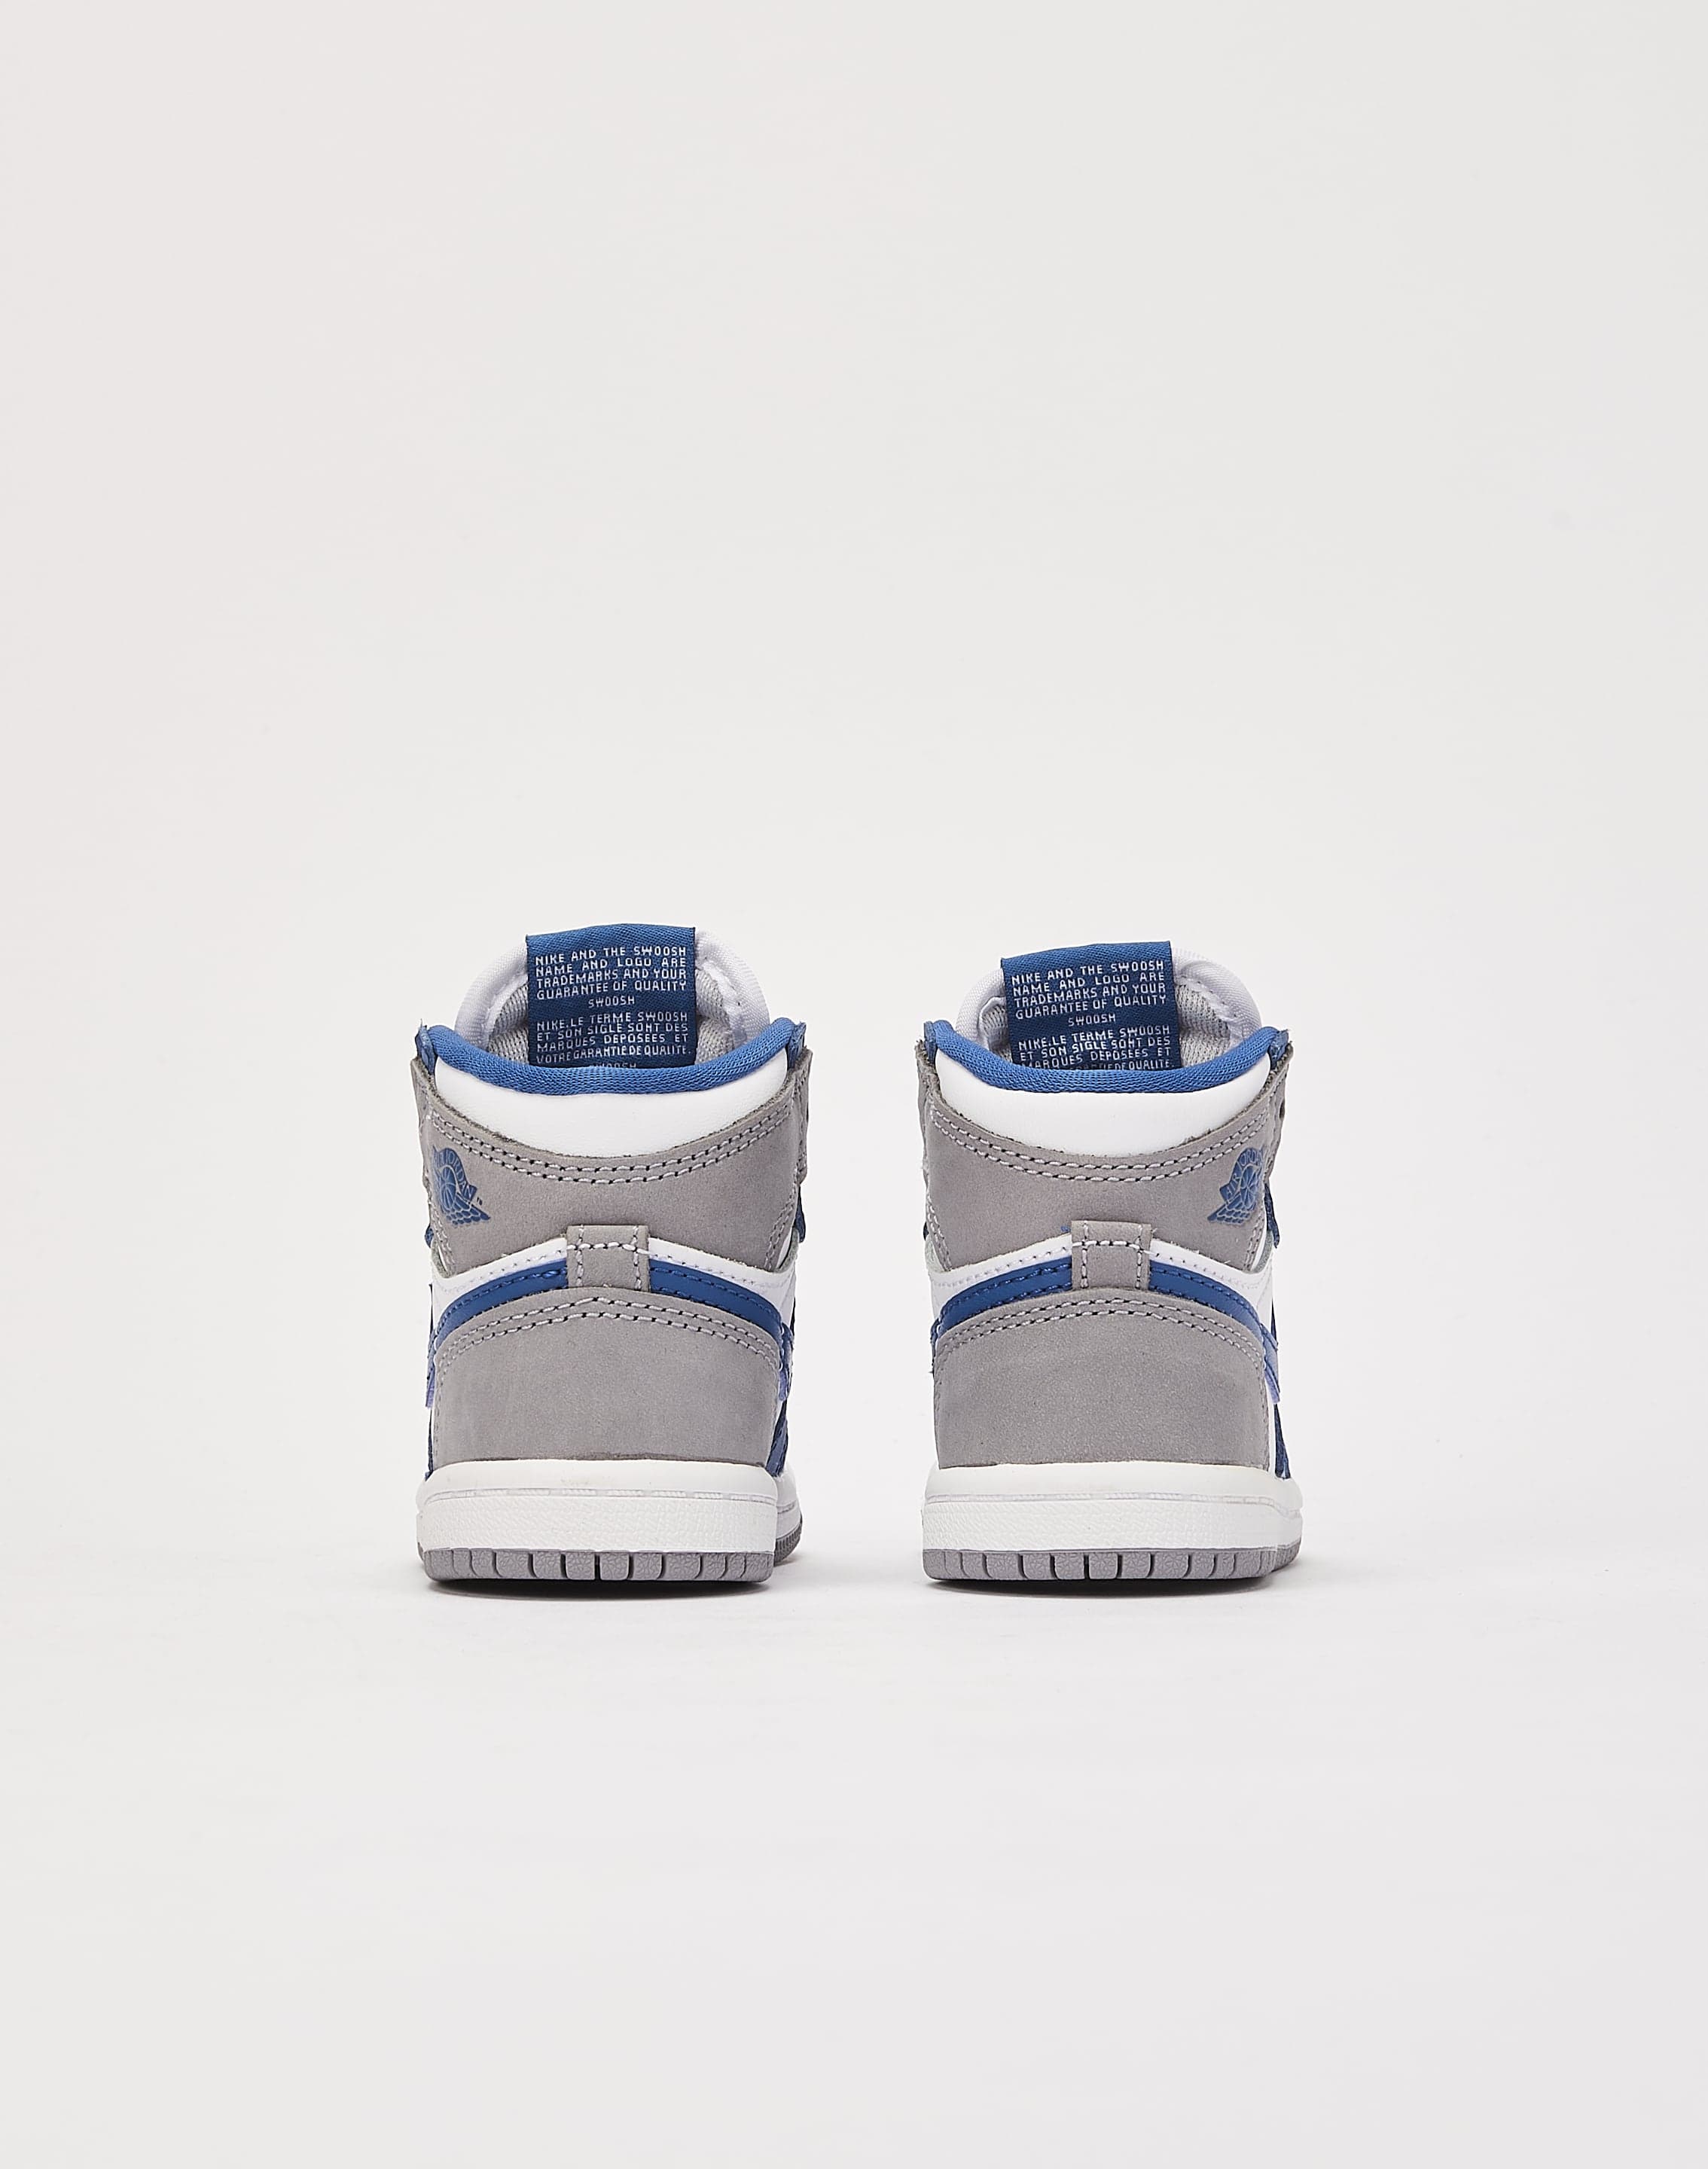 Vintage Nike Air Jordan 14 Retro (TD) White/Blue (312093 107) Toddler Size  5C